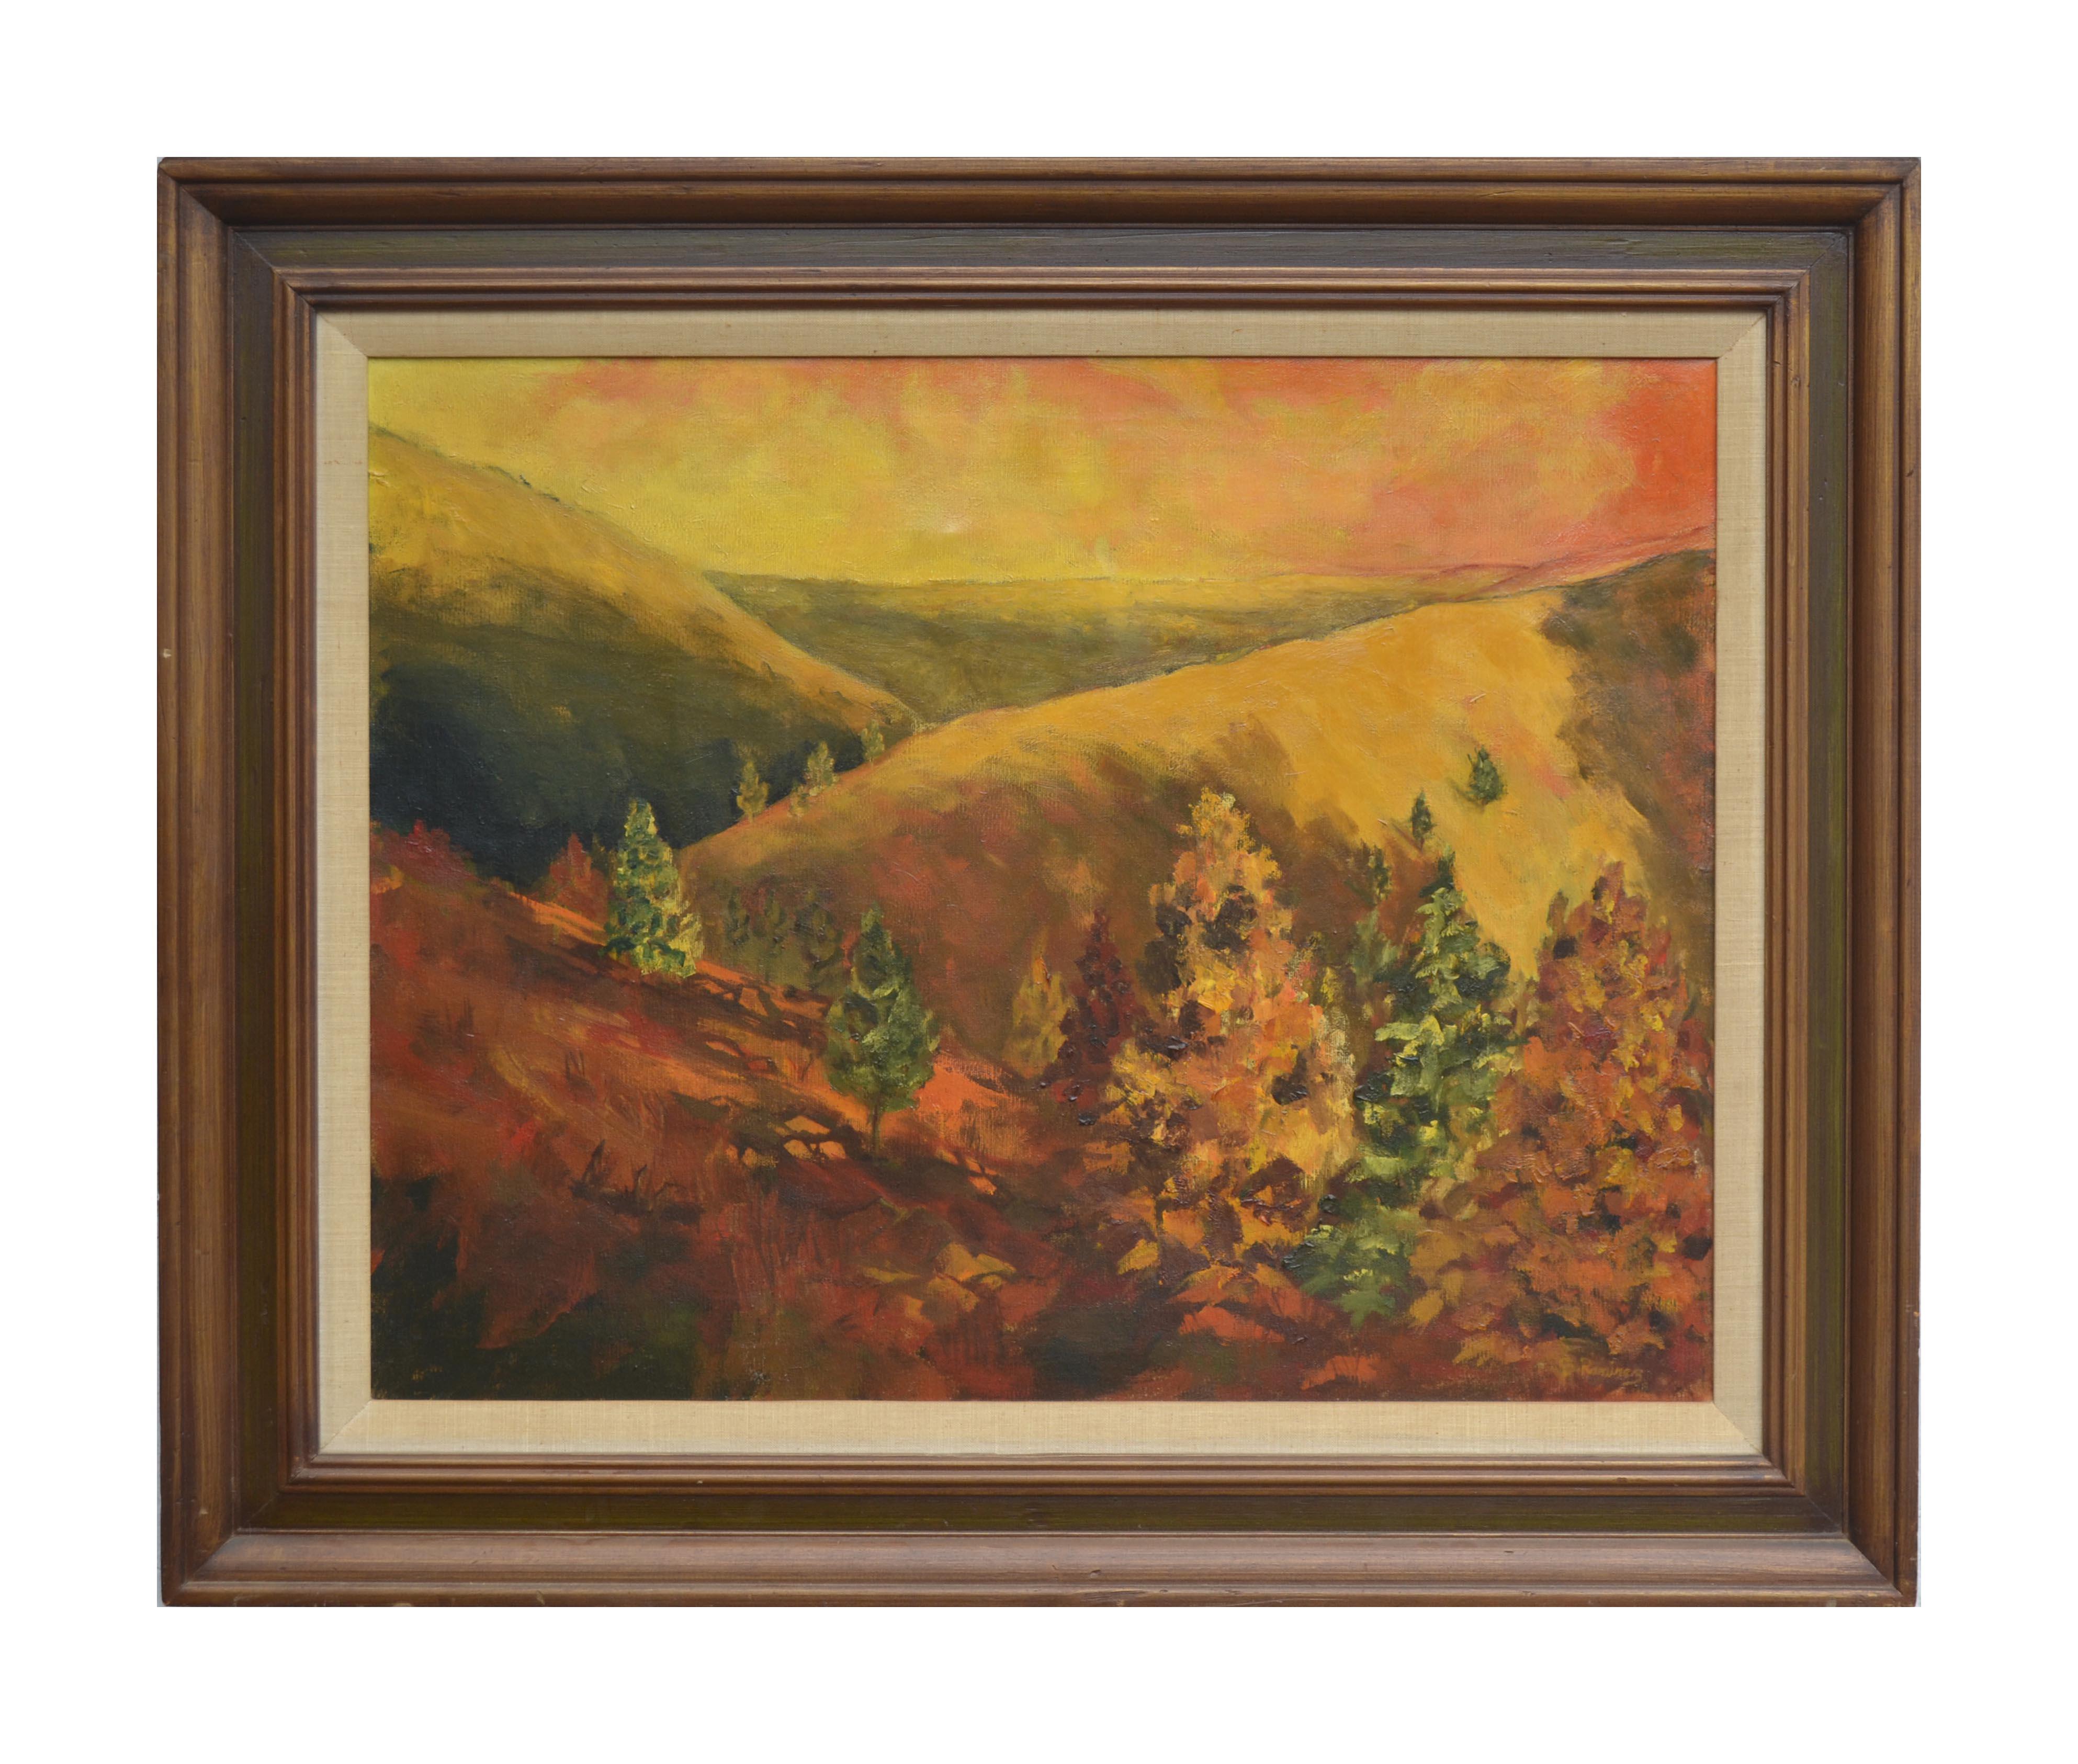 B Ramirez Landscape Painting - Autumn Hills Landscape